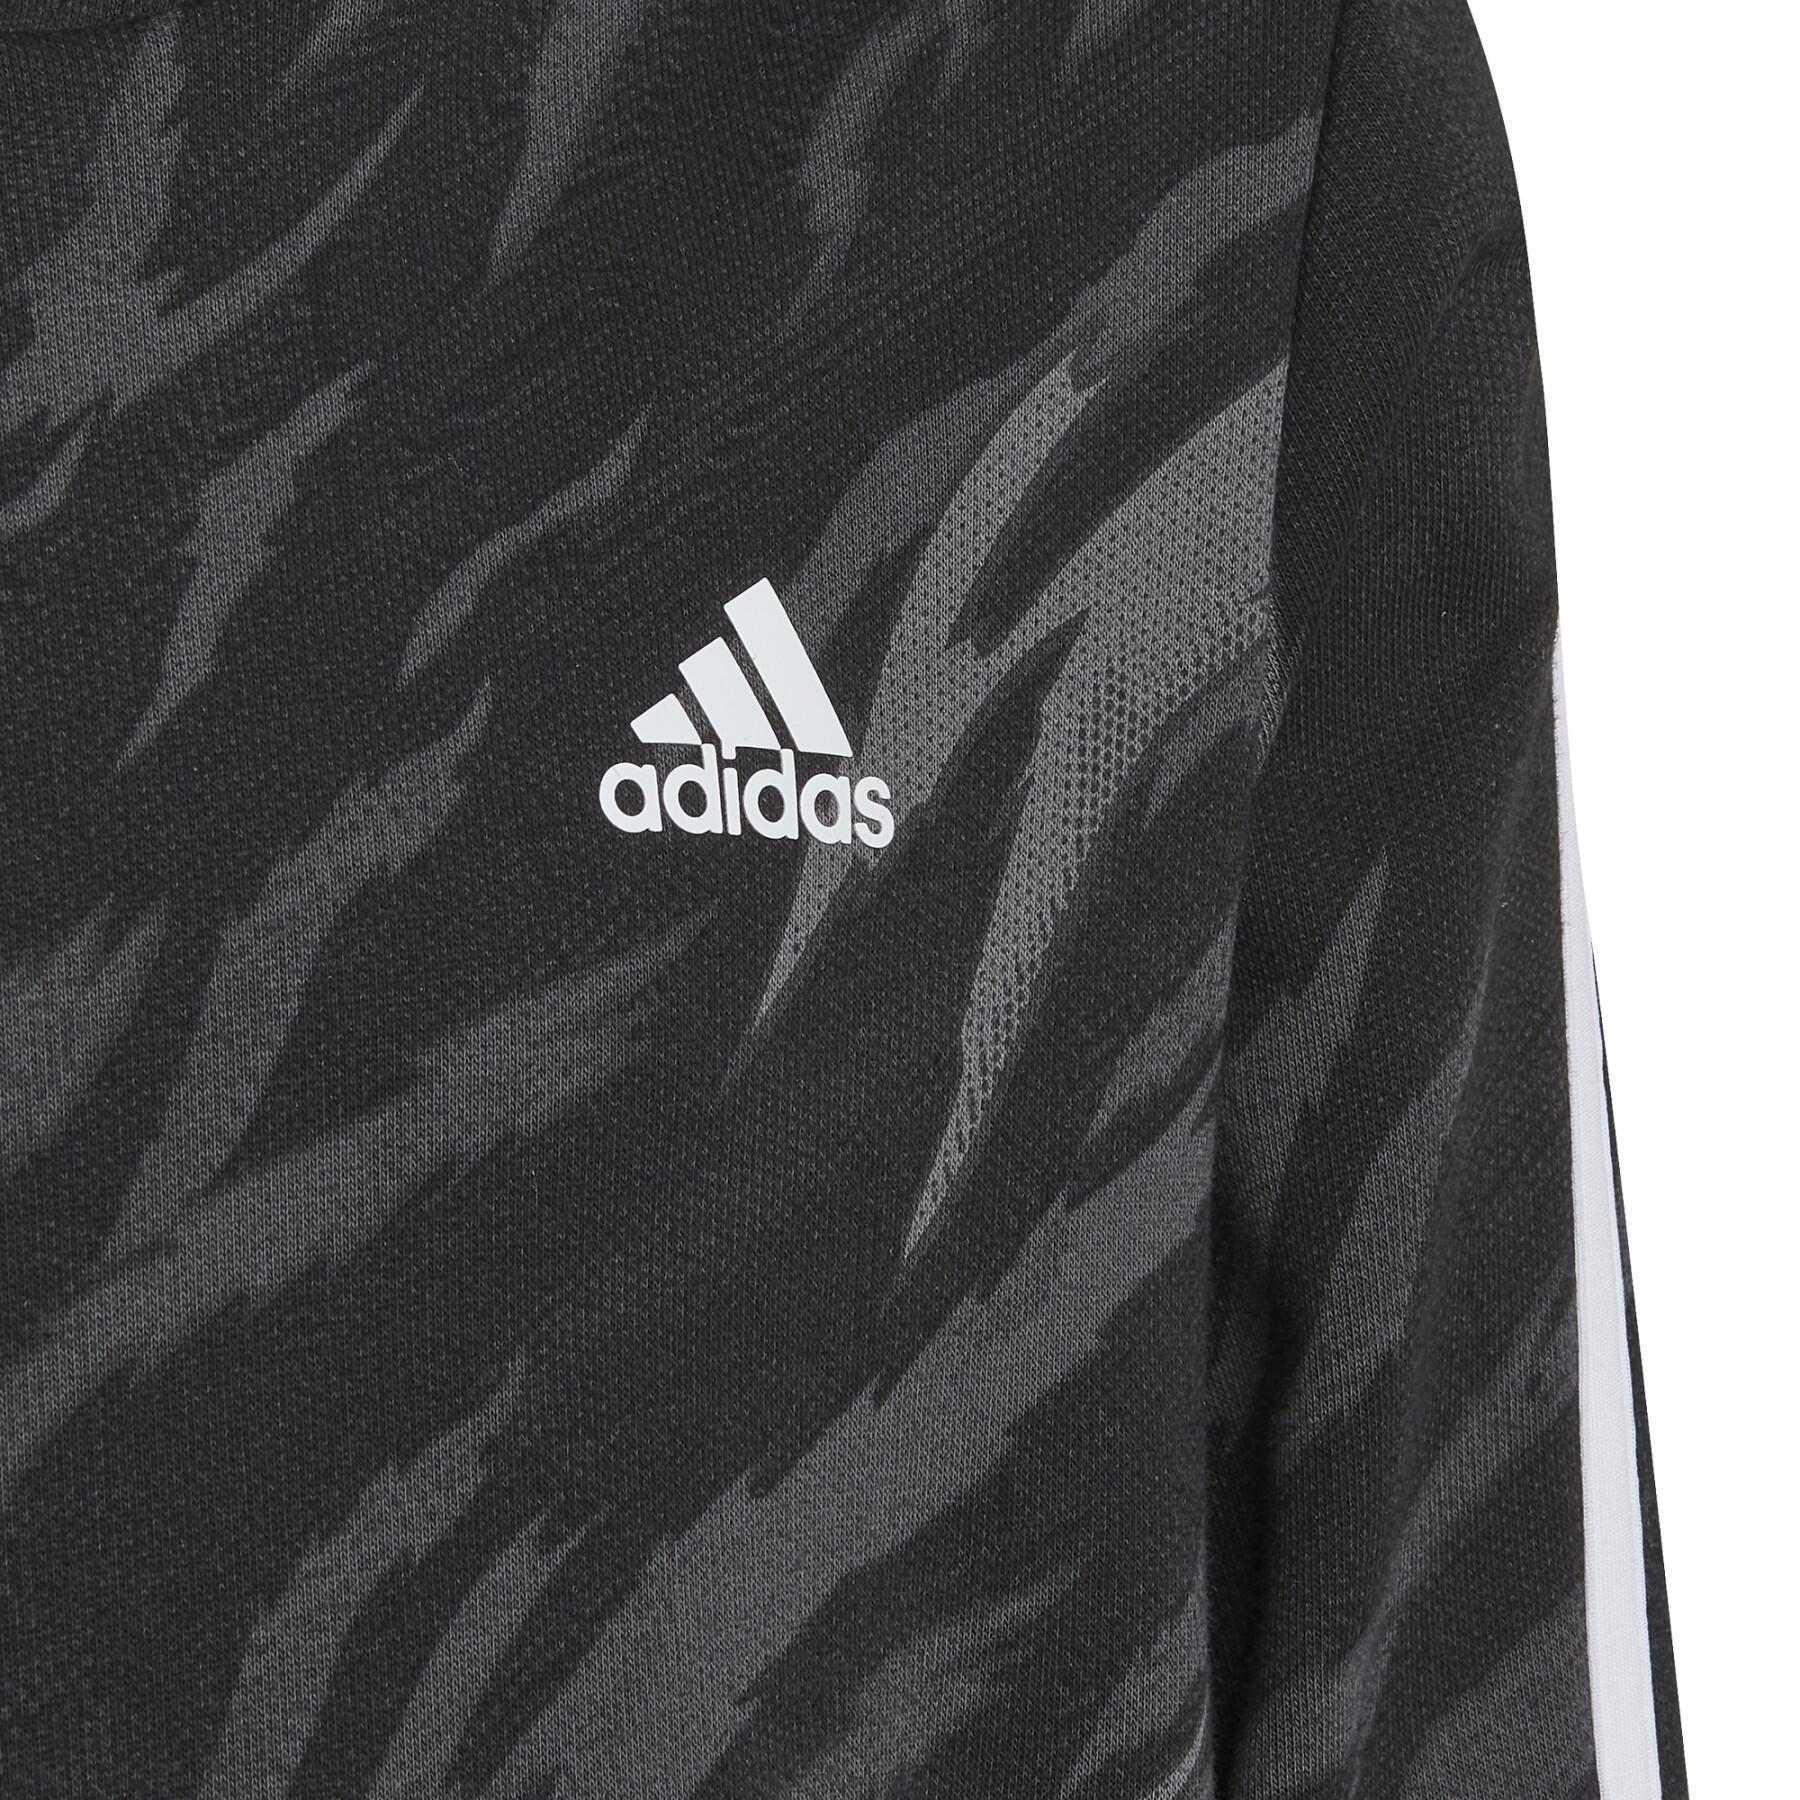 Boy hoodie adidas future icons 3-stripes graphic